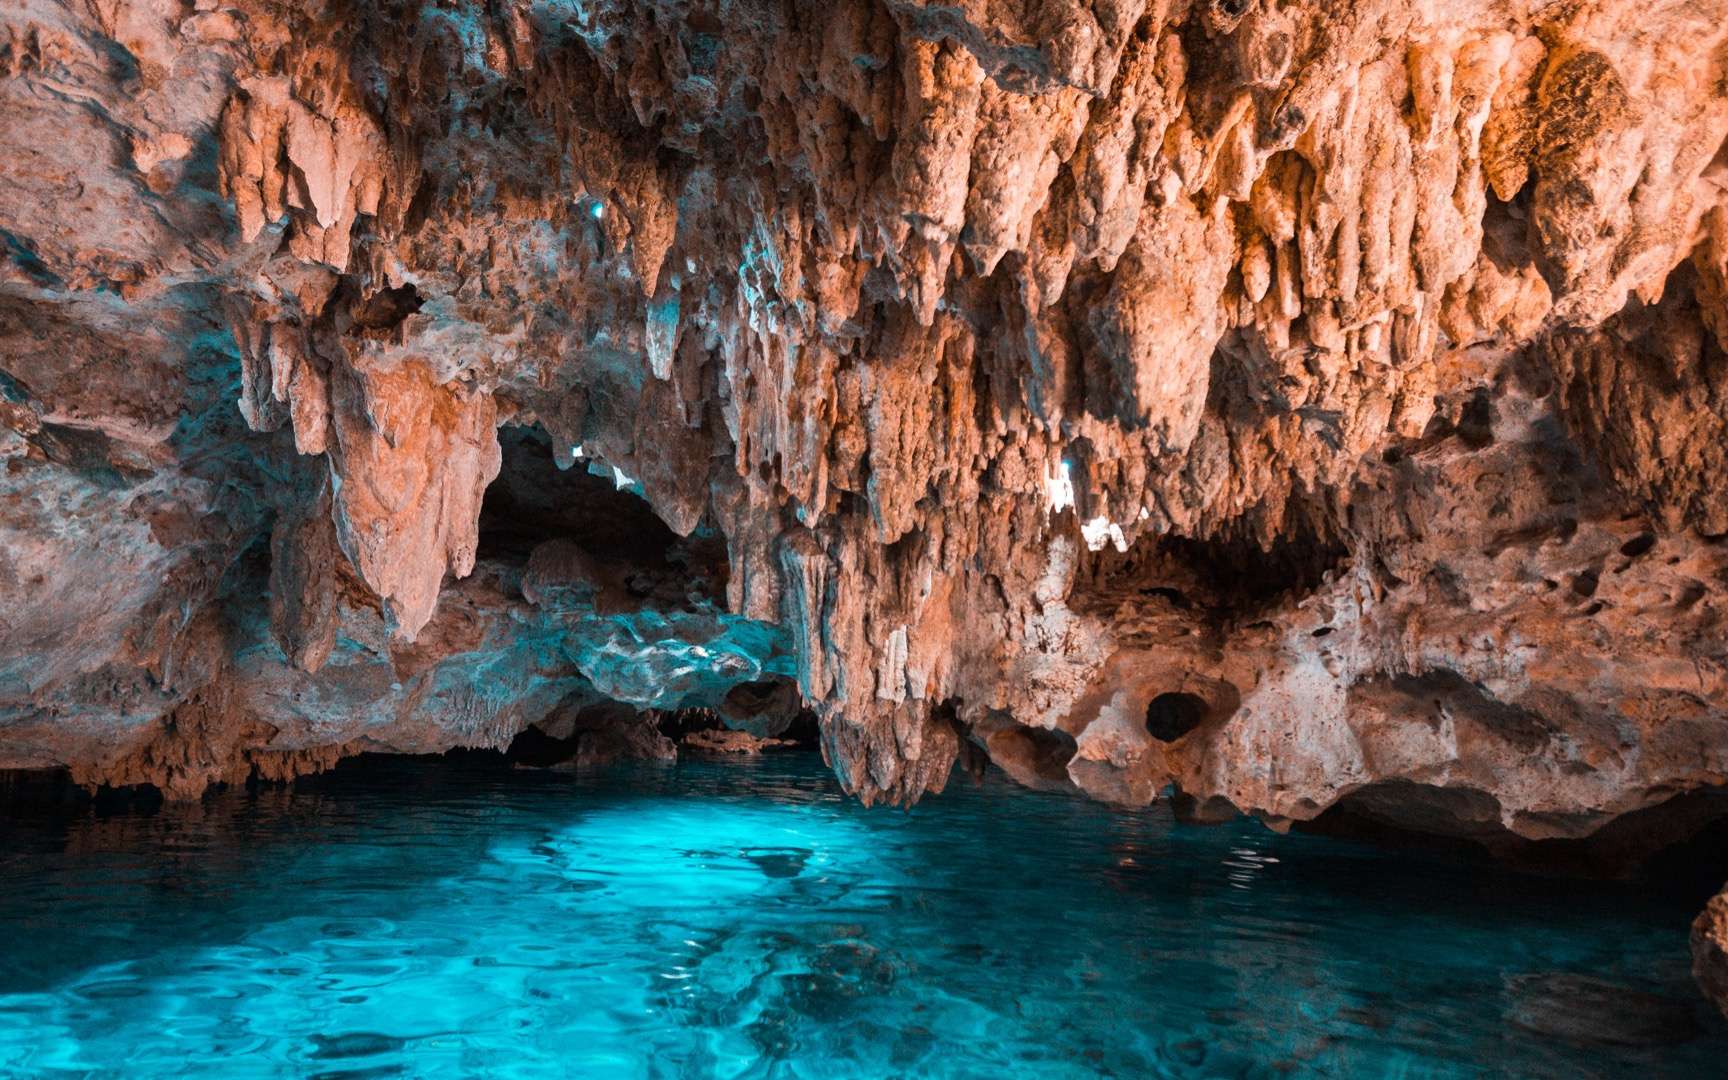 Une des grottes les plus profondes du monde est un incroyable labyrinthe souterrain de plus de 100 km !